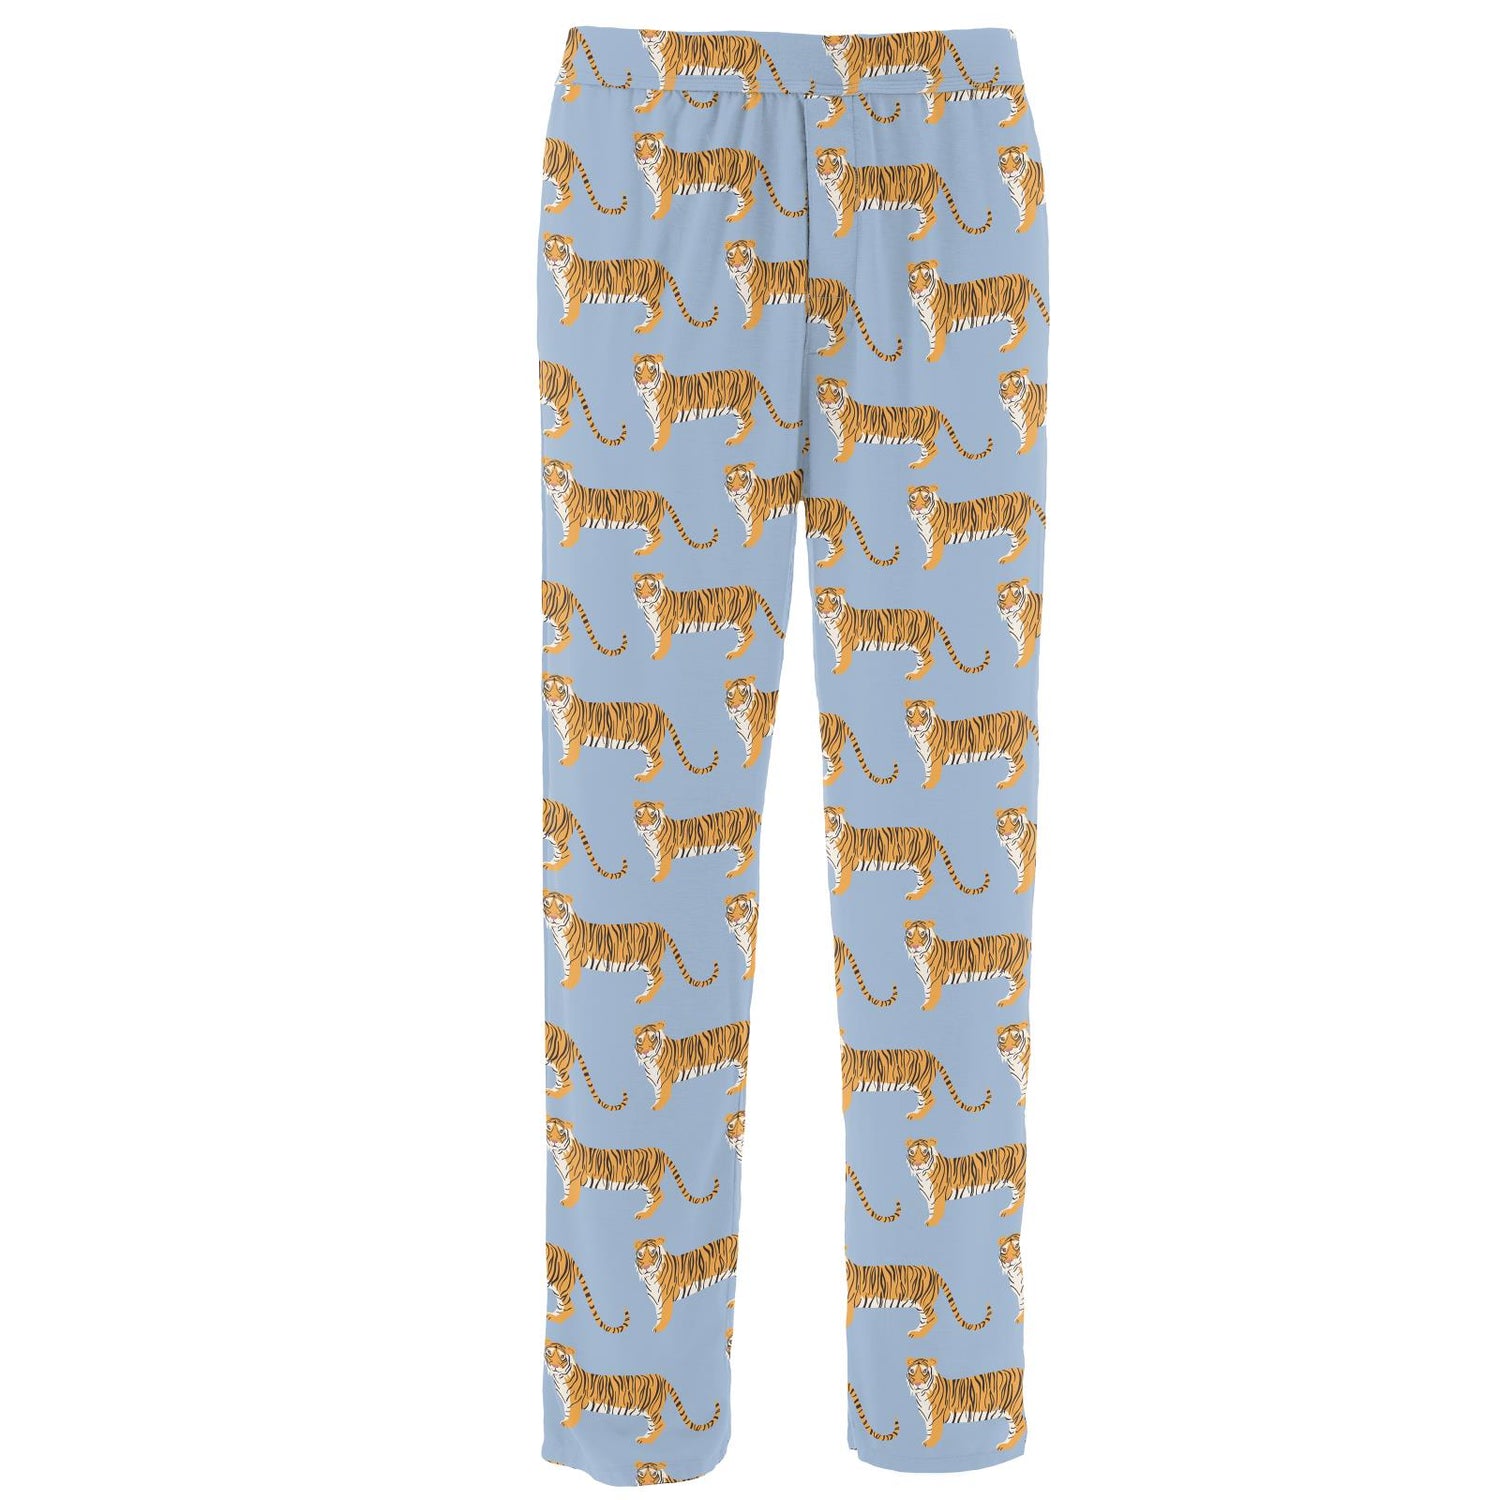 Men's Print Pajama Pants in Pond Tiger